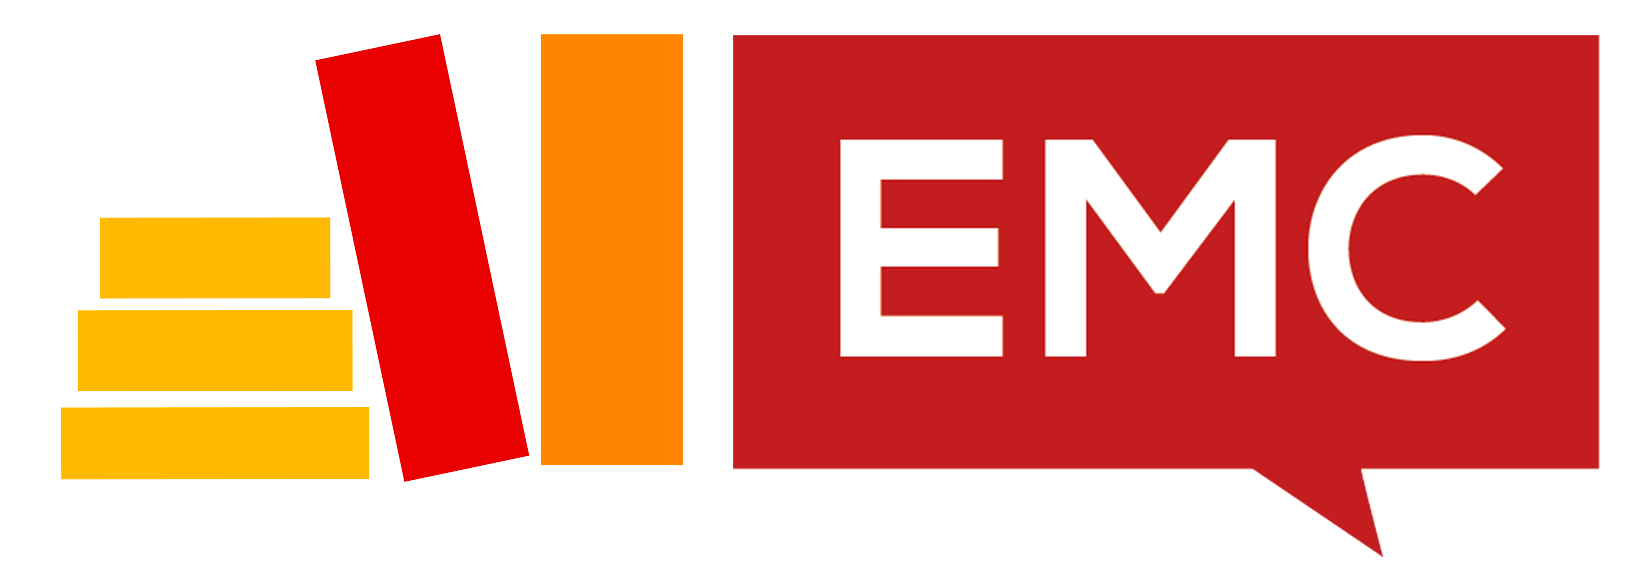 EMC Logo - EMC logo - EMC School